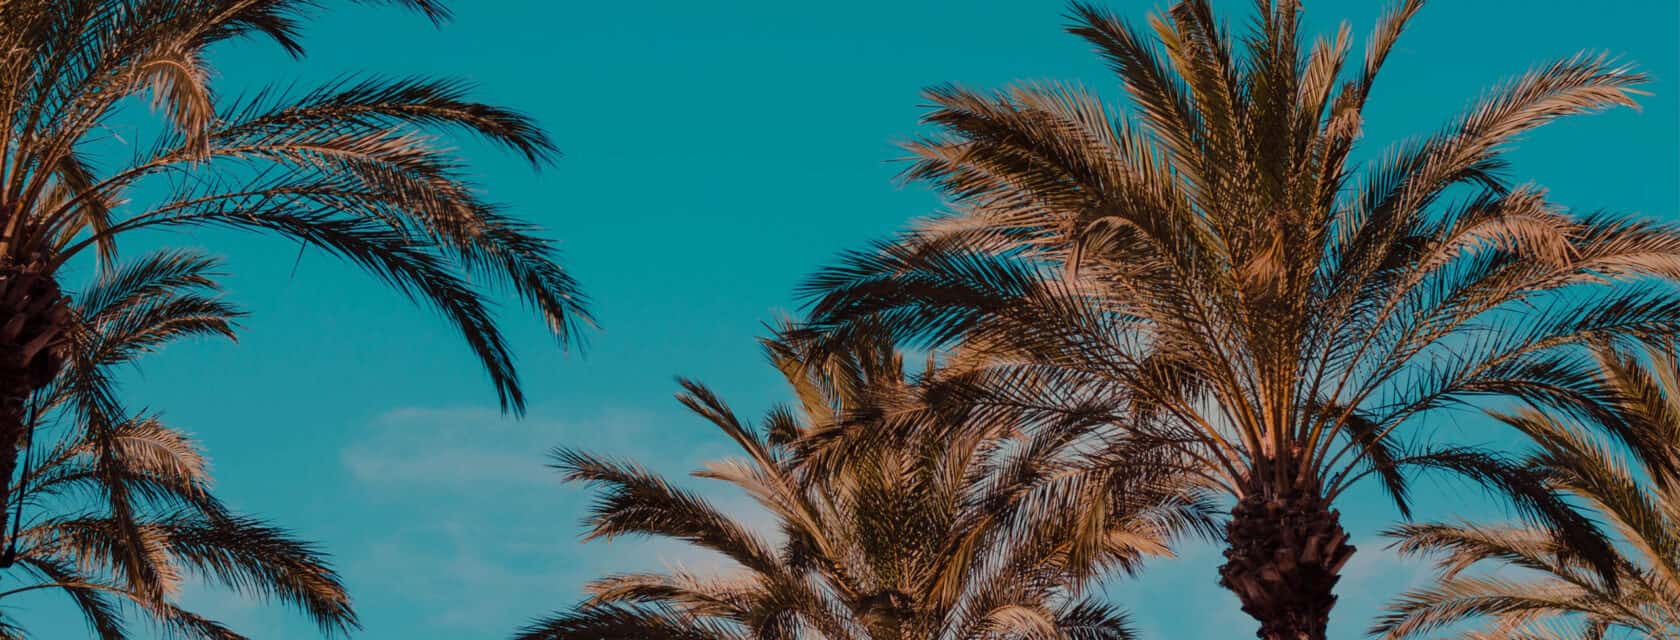 Palm trees and a blue sky.